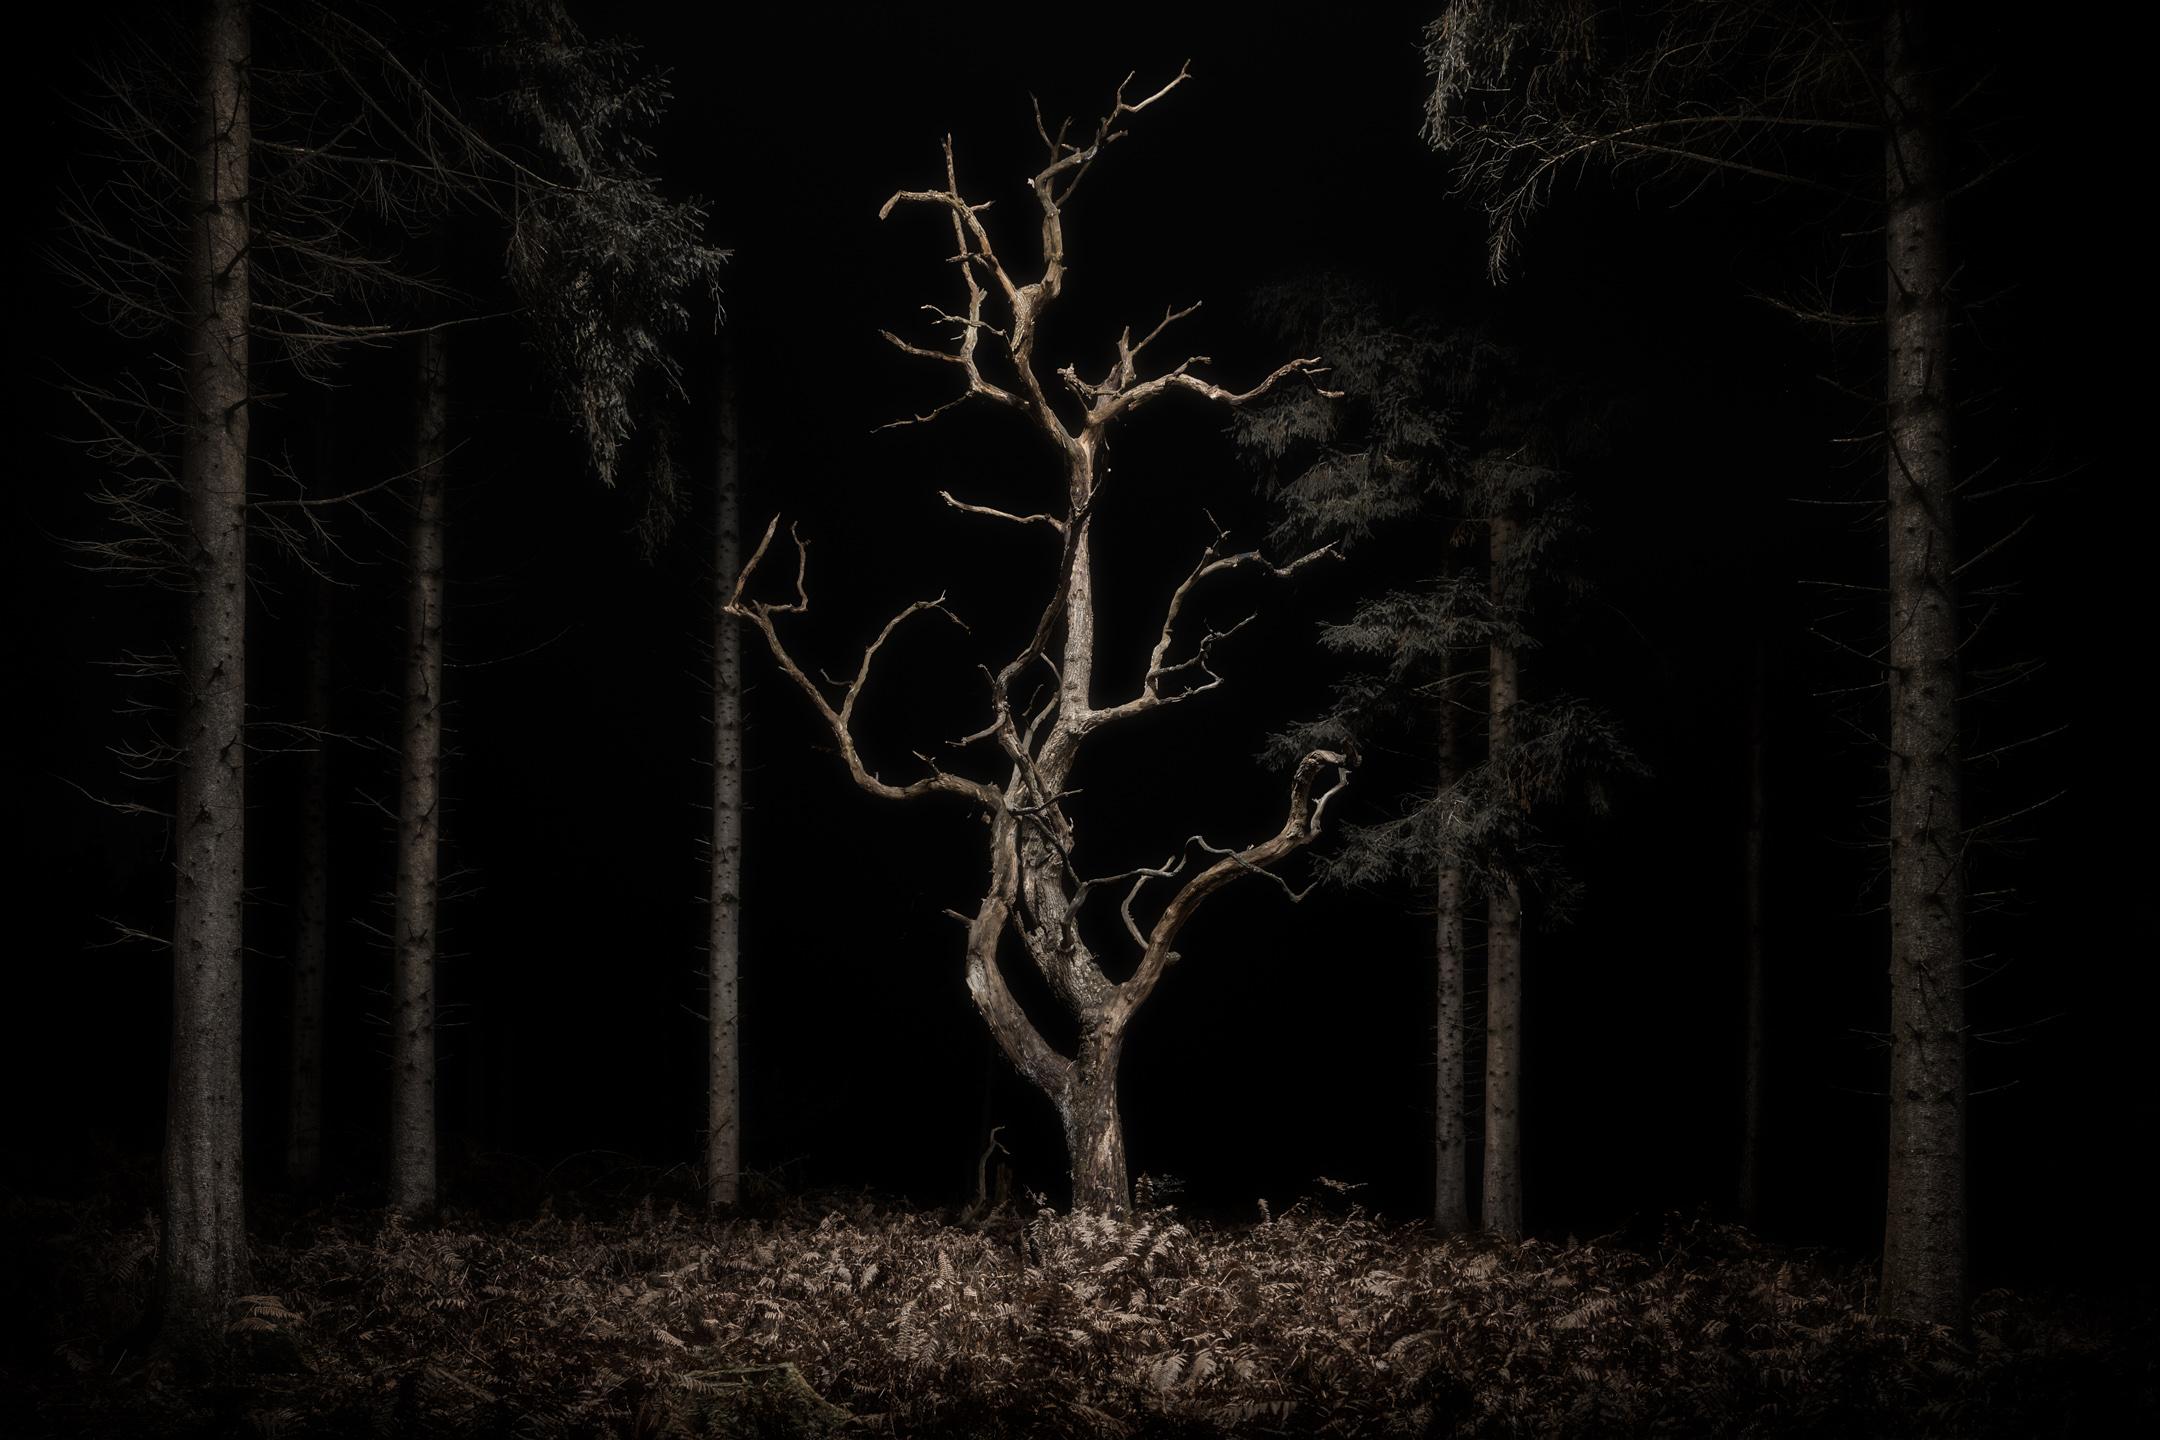 Twilight's 034, Danse Macabre - A skeletal Oak tree - Landscpae - Photograph by Jasper Goodall